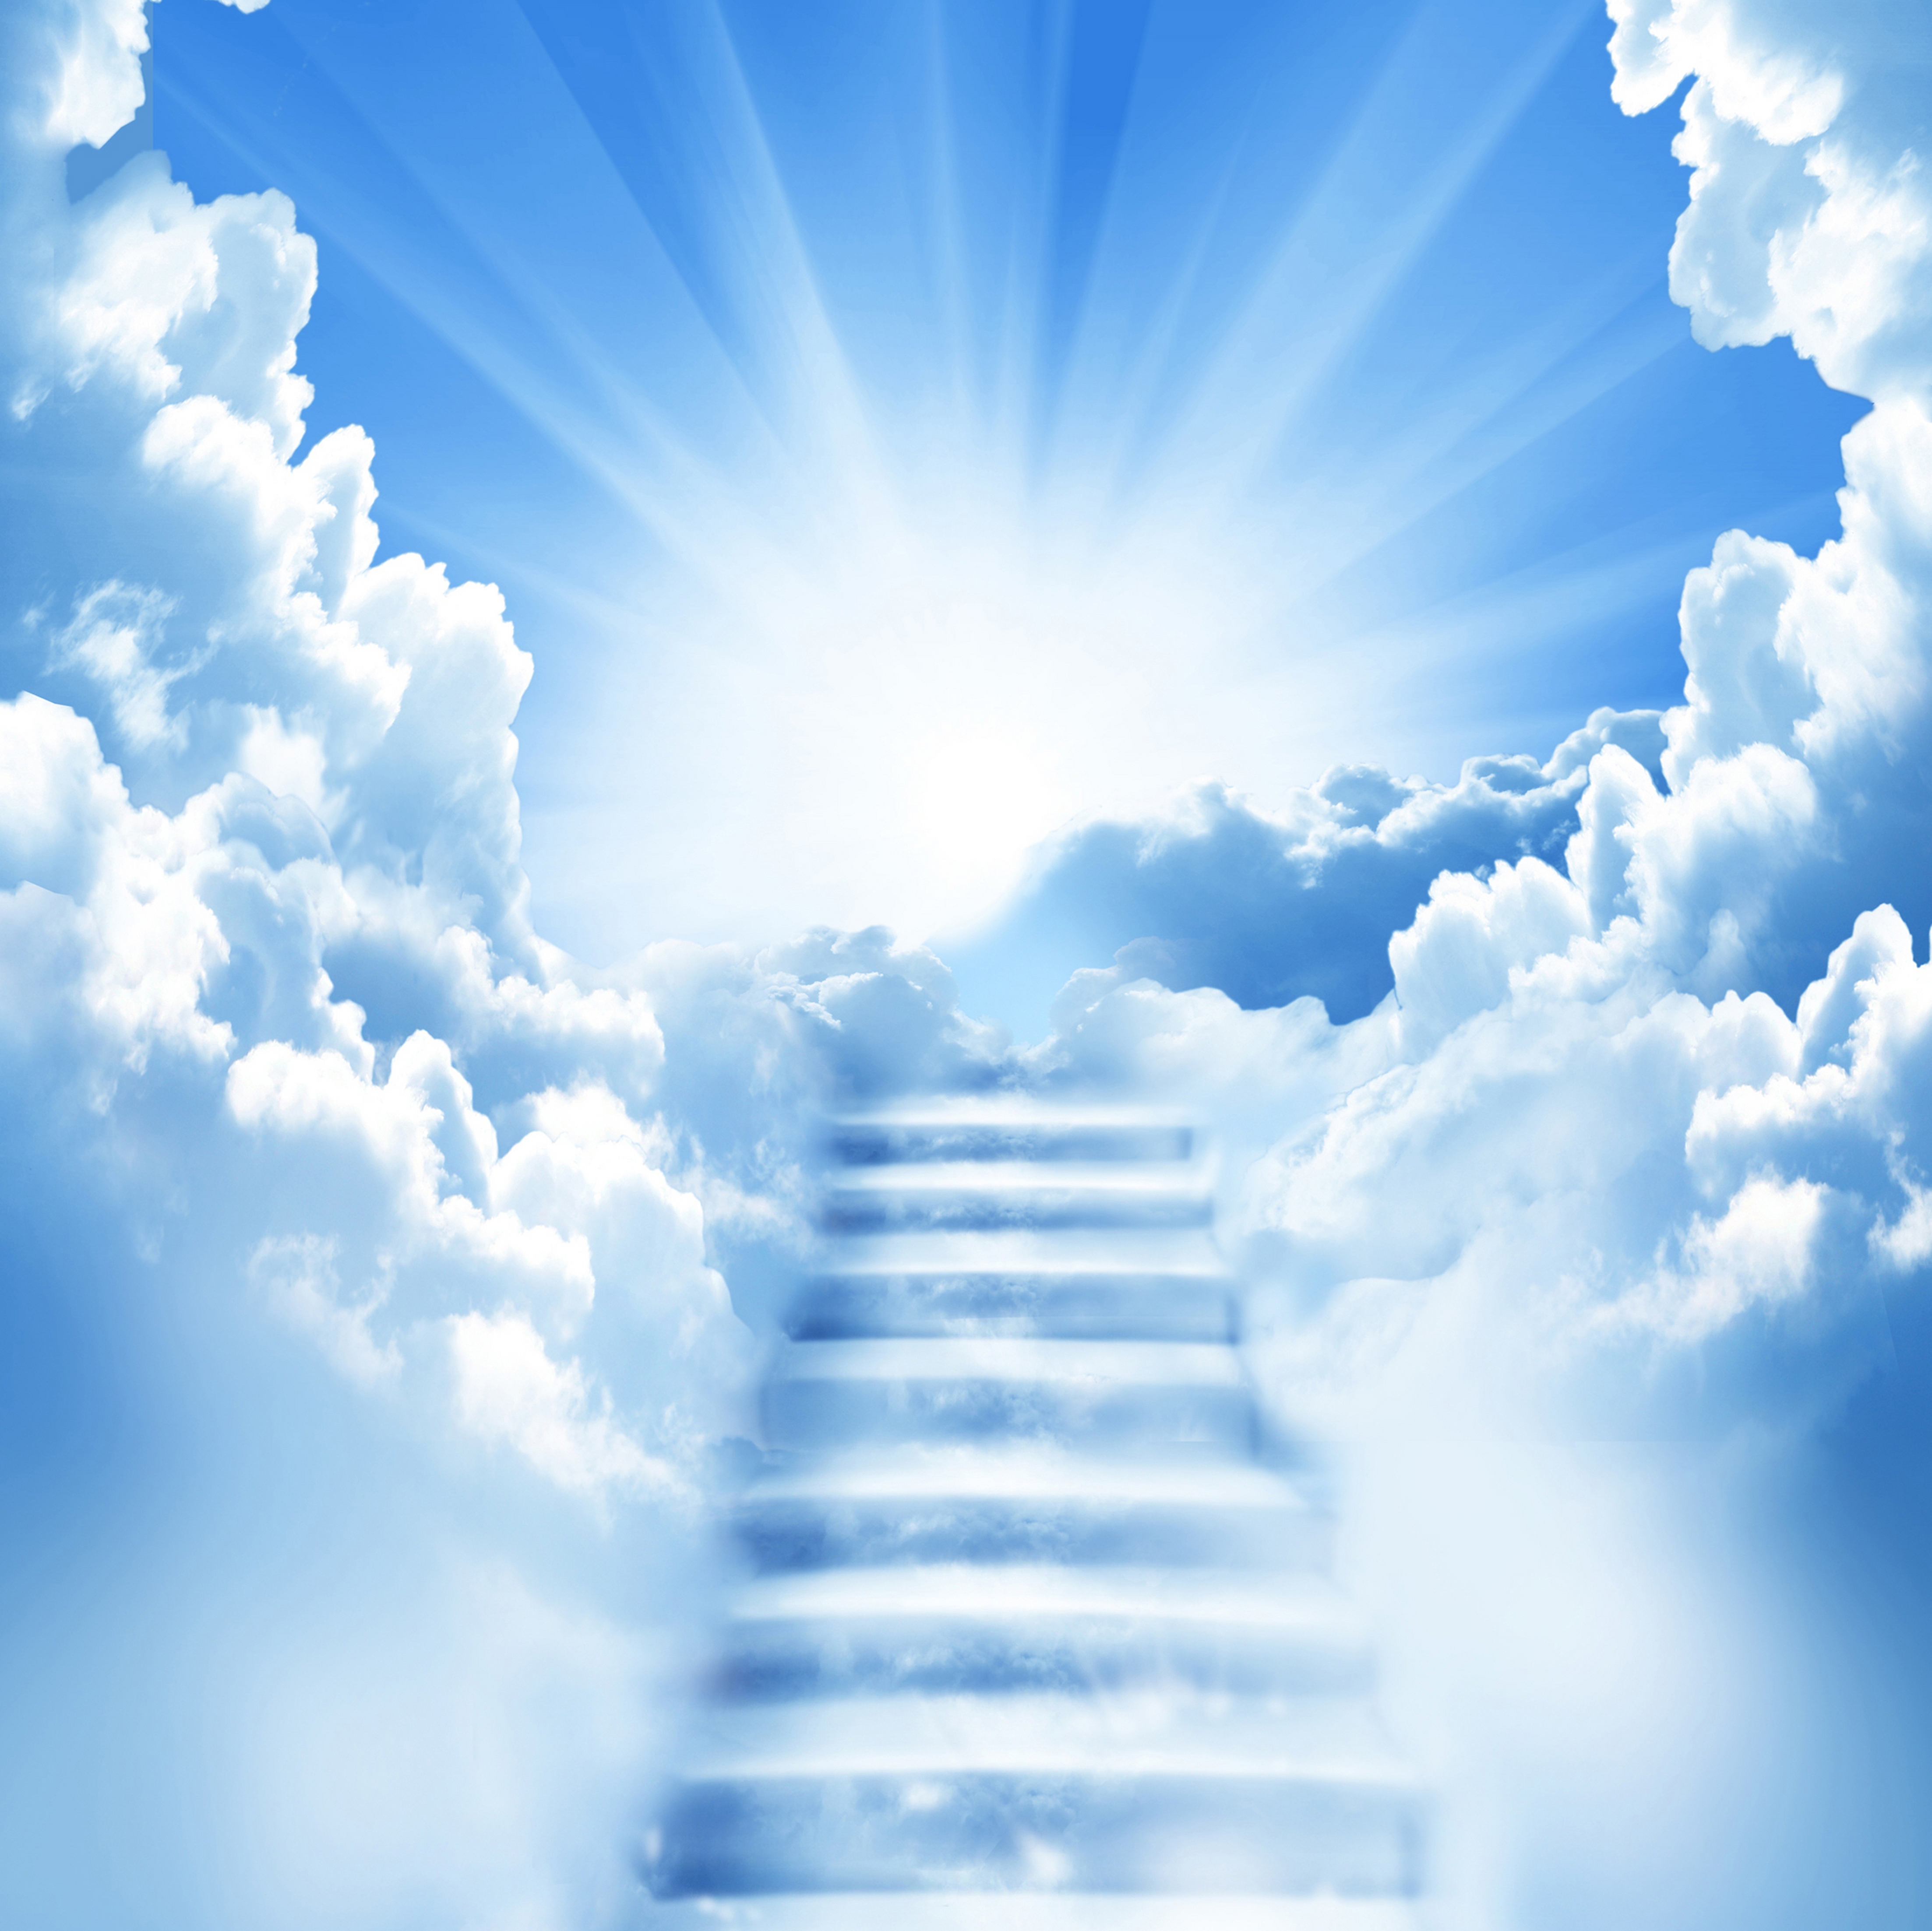 Stairway To Heaven Desktop Background Wallpaper HD